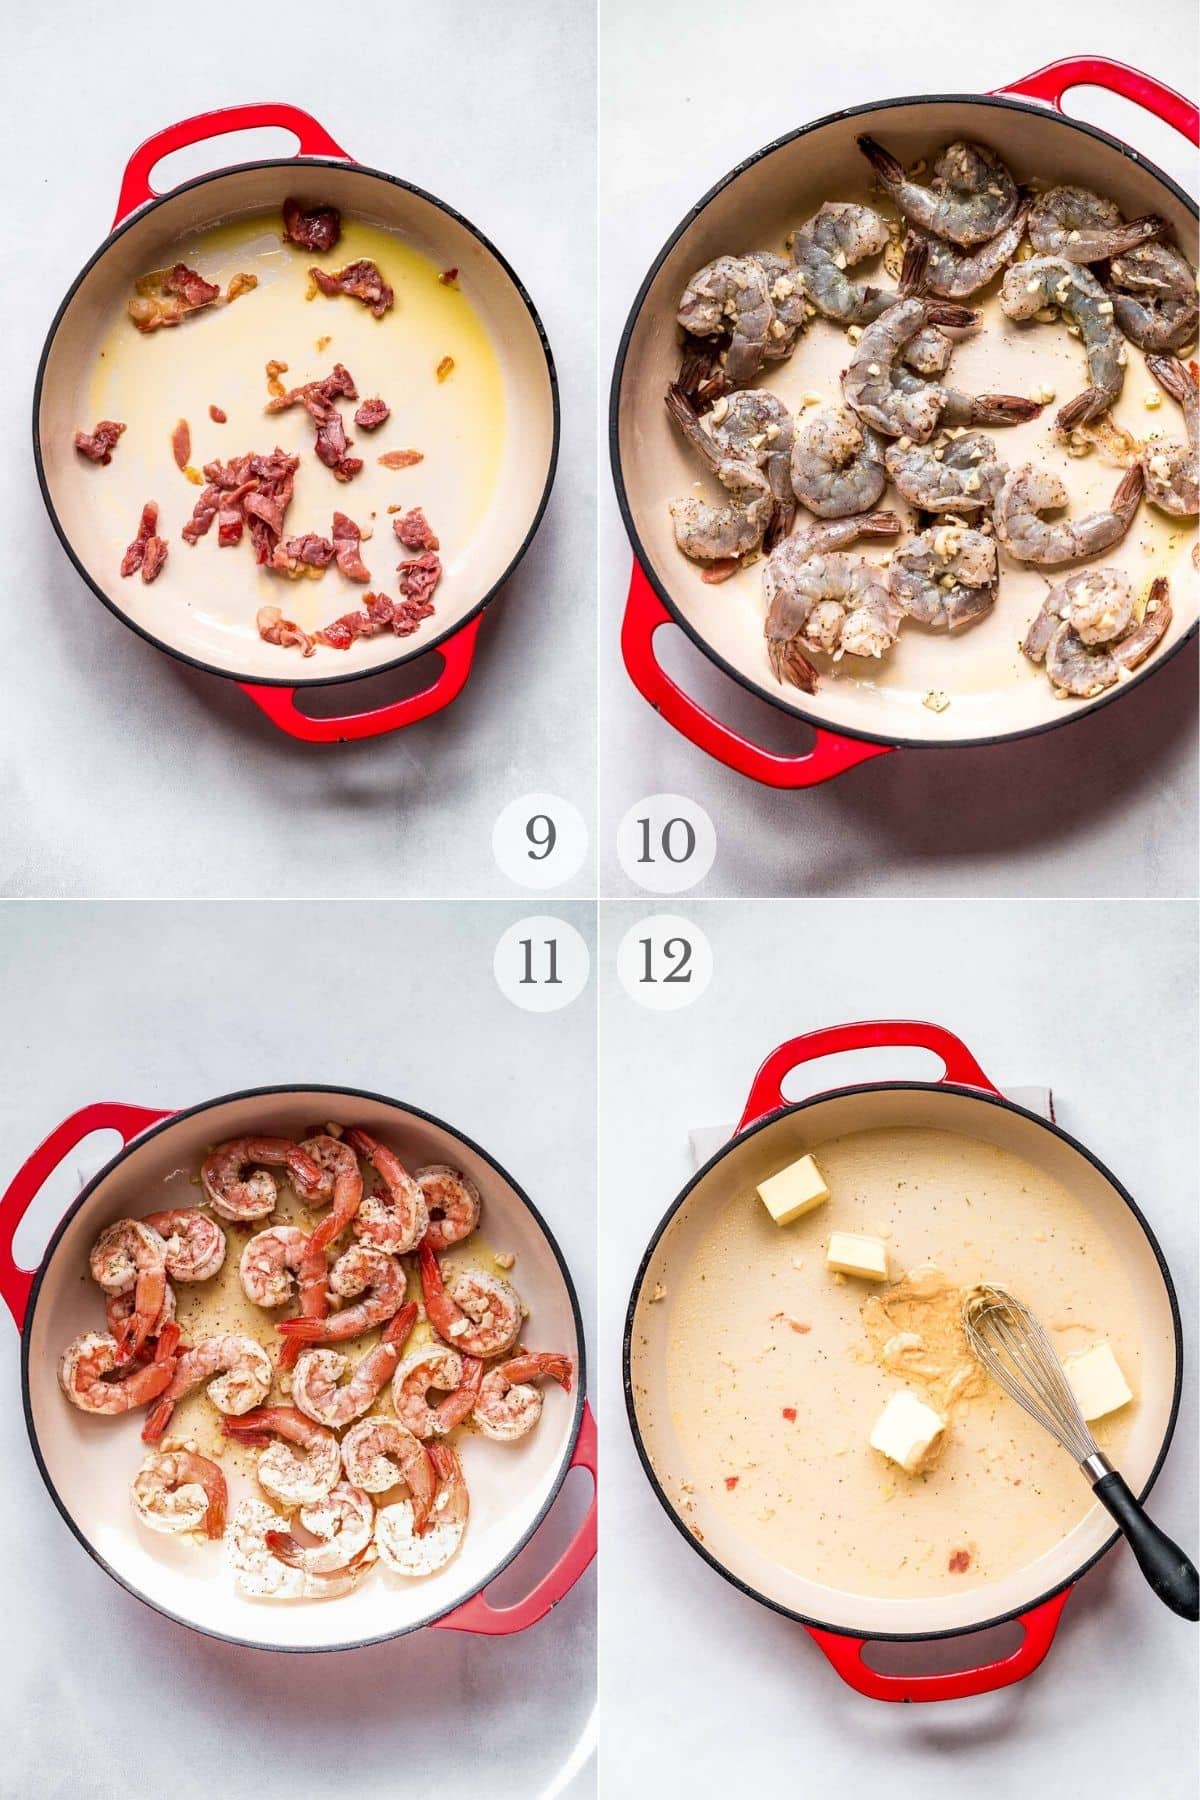 shrimp and polenta recipe steps 9-12.